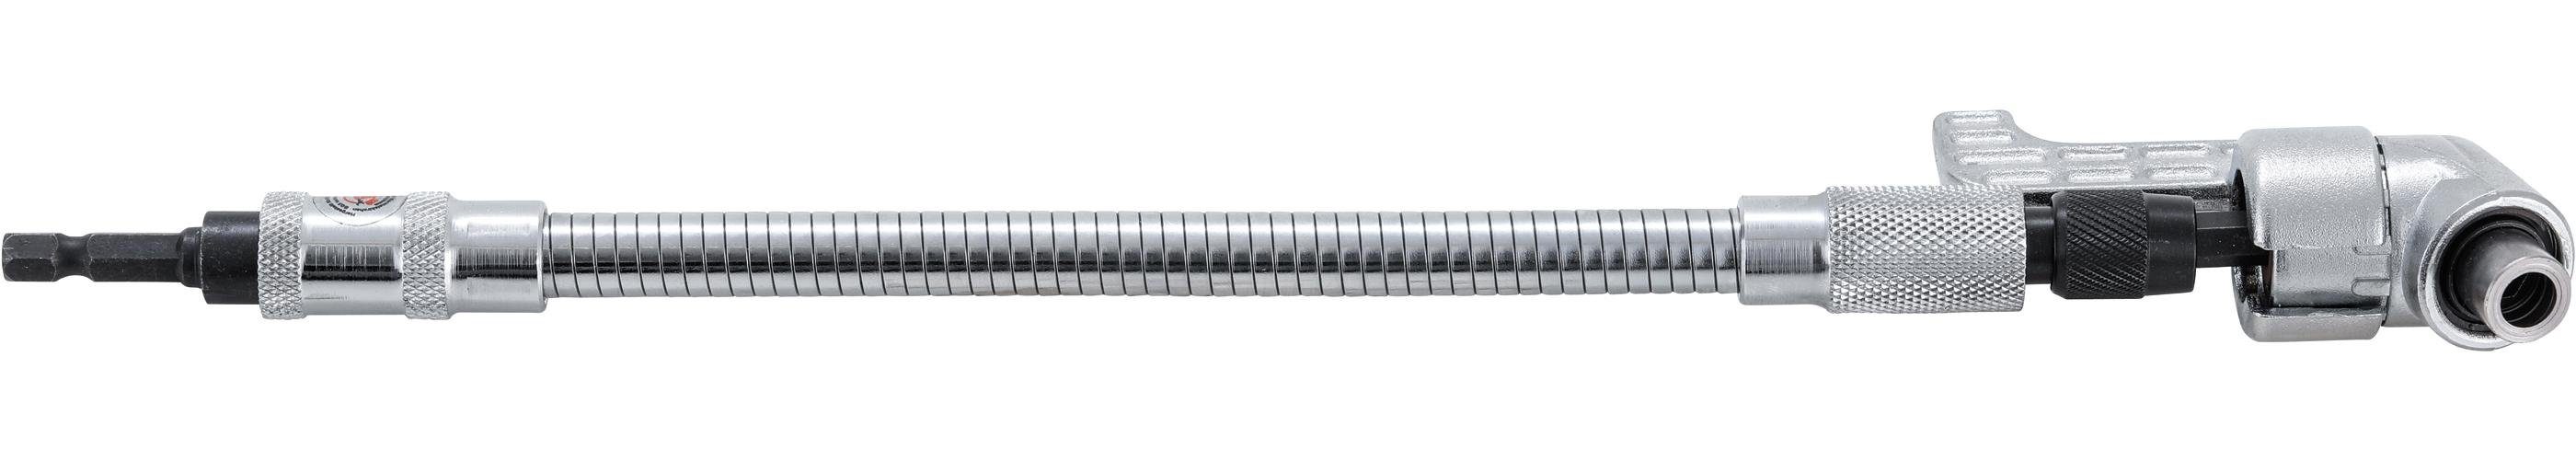 Bit-Schraubendreher 6,3 (1/4), Winkelschrauber-Verlängerung, mm Flexible technic BGS mm 310